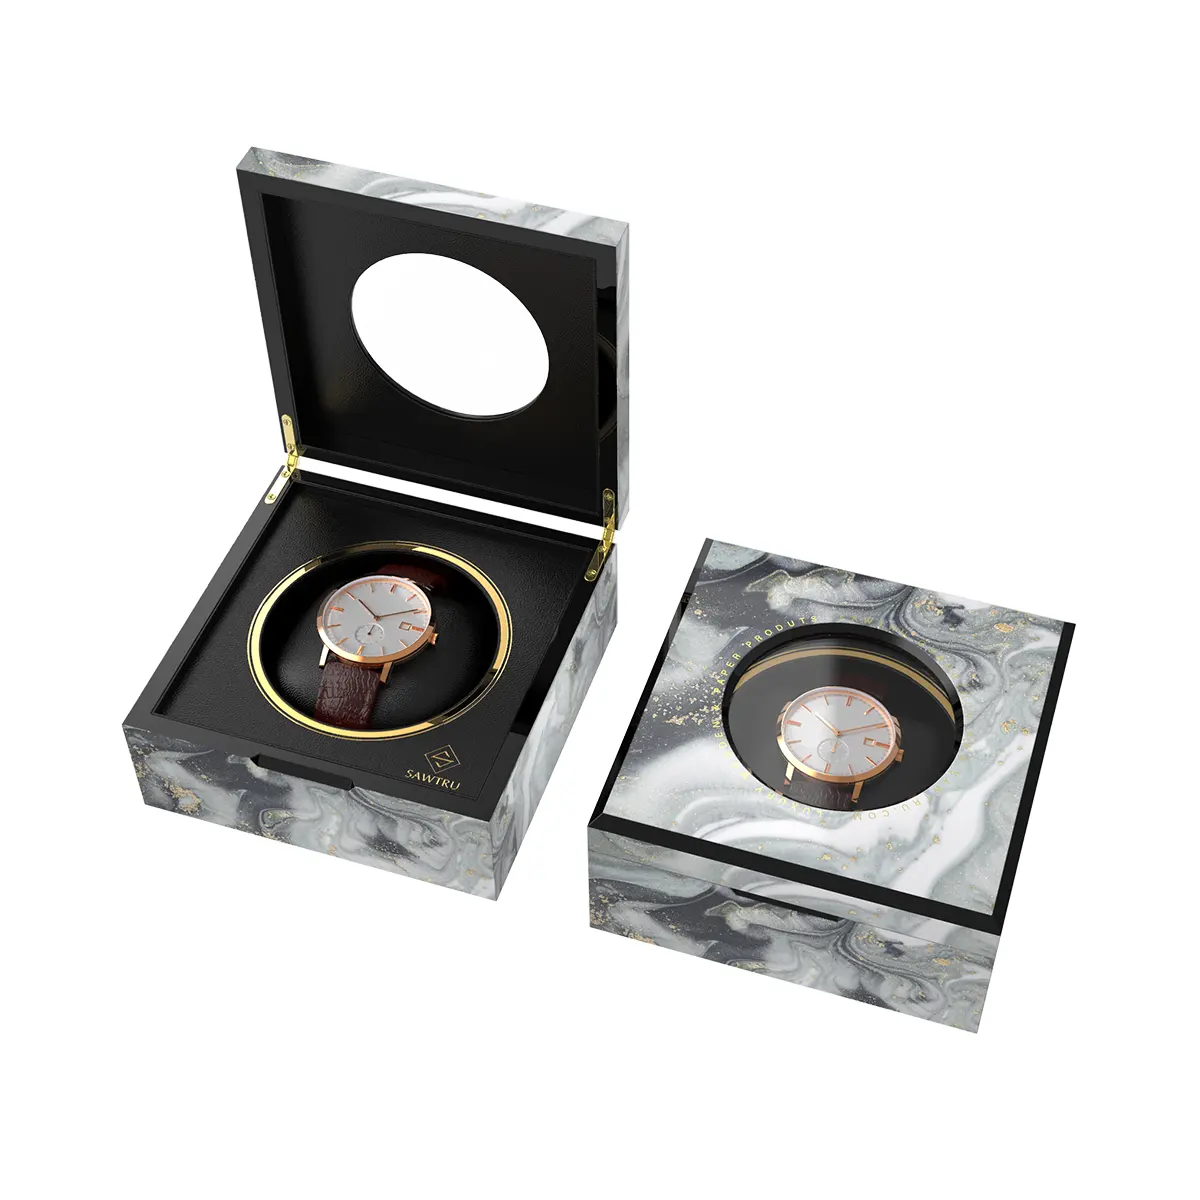 Personalizado embalagem caixa de embalagem caixa de embalagem caixa de relógio de pulso de madeira de madeira de madeira